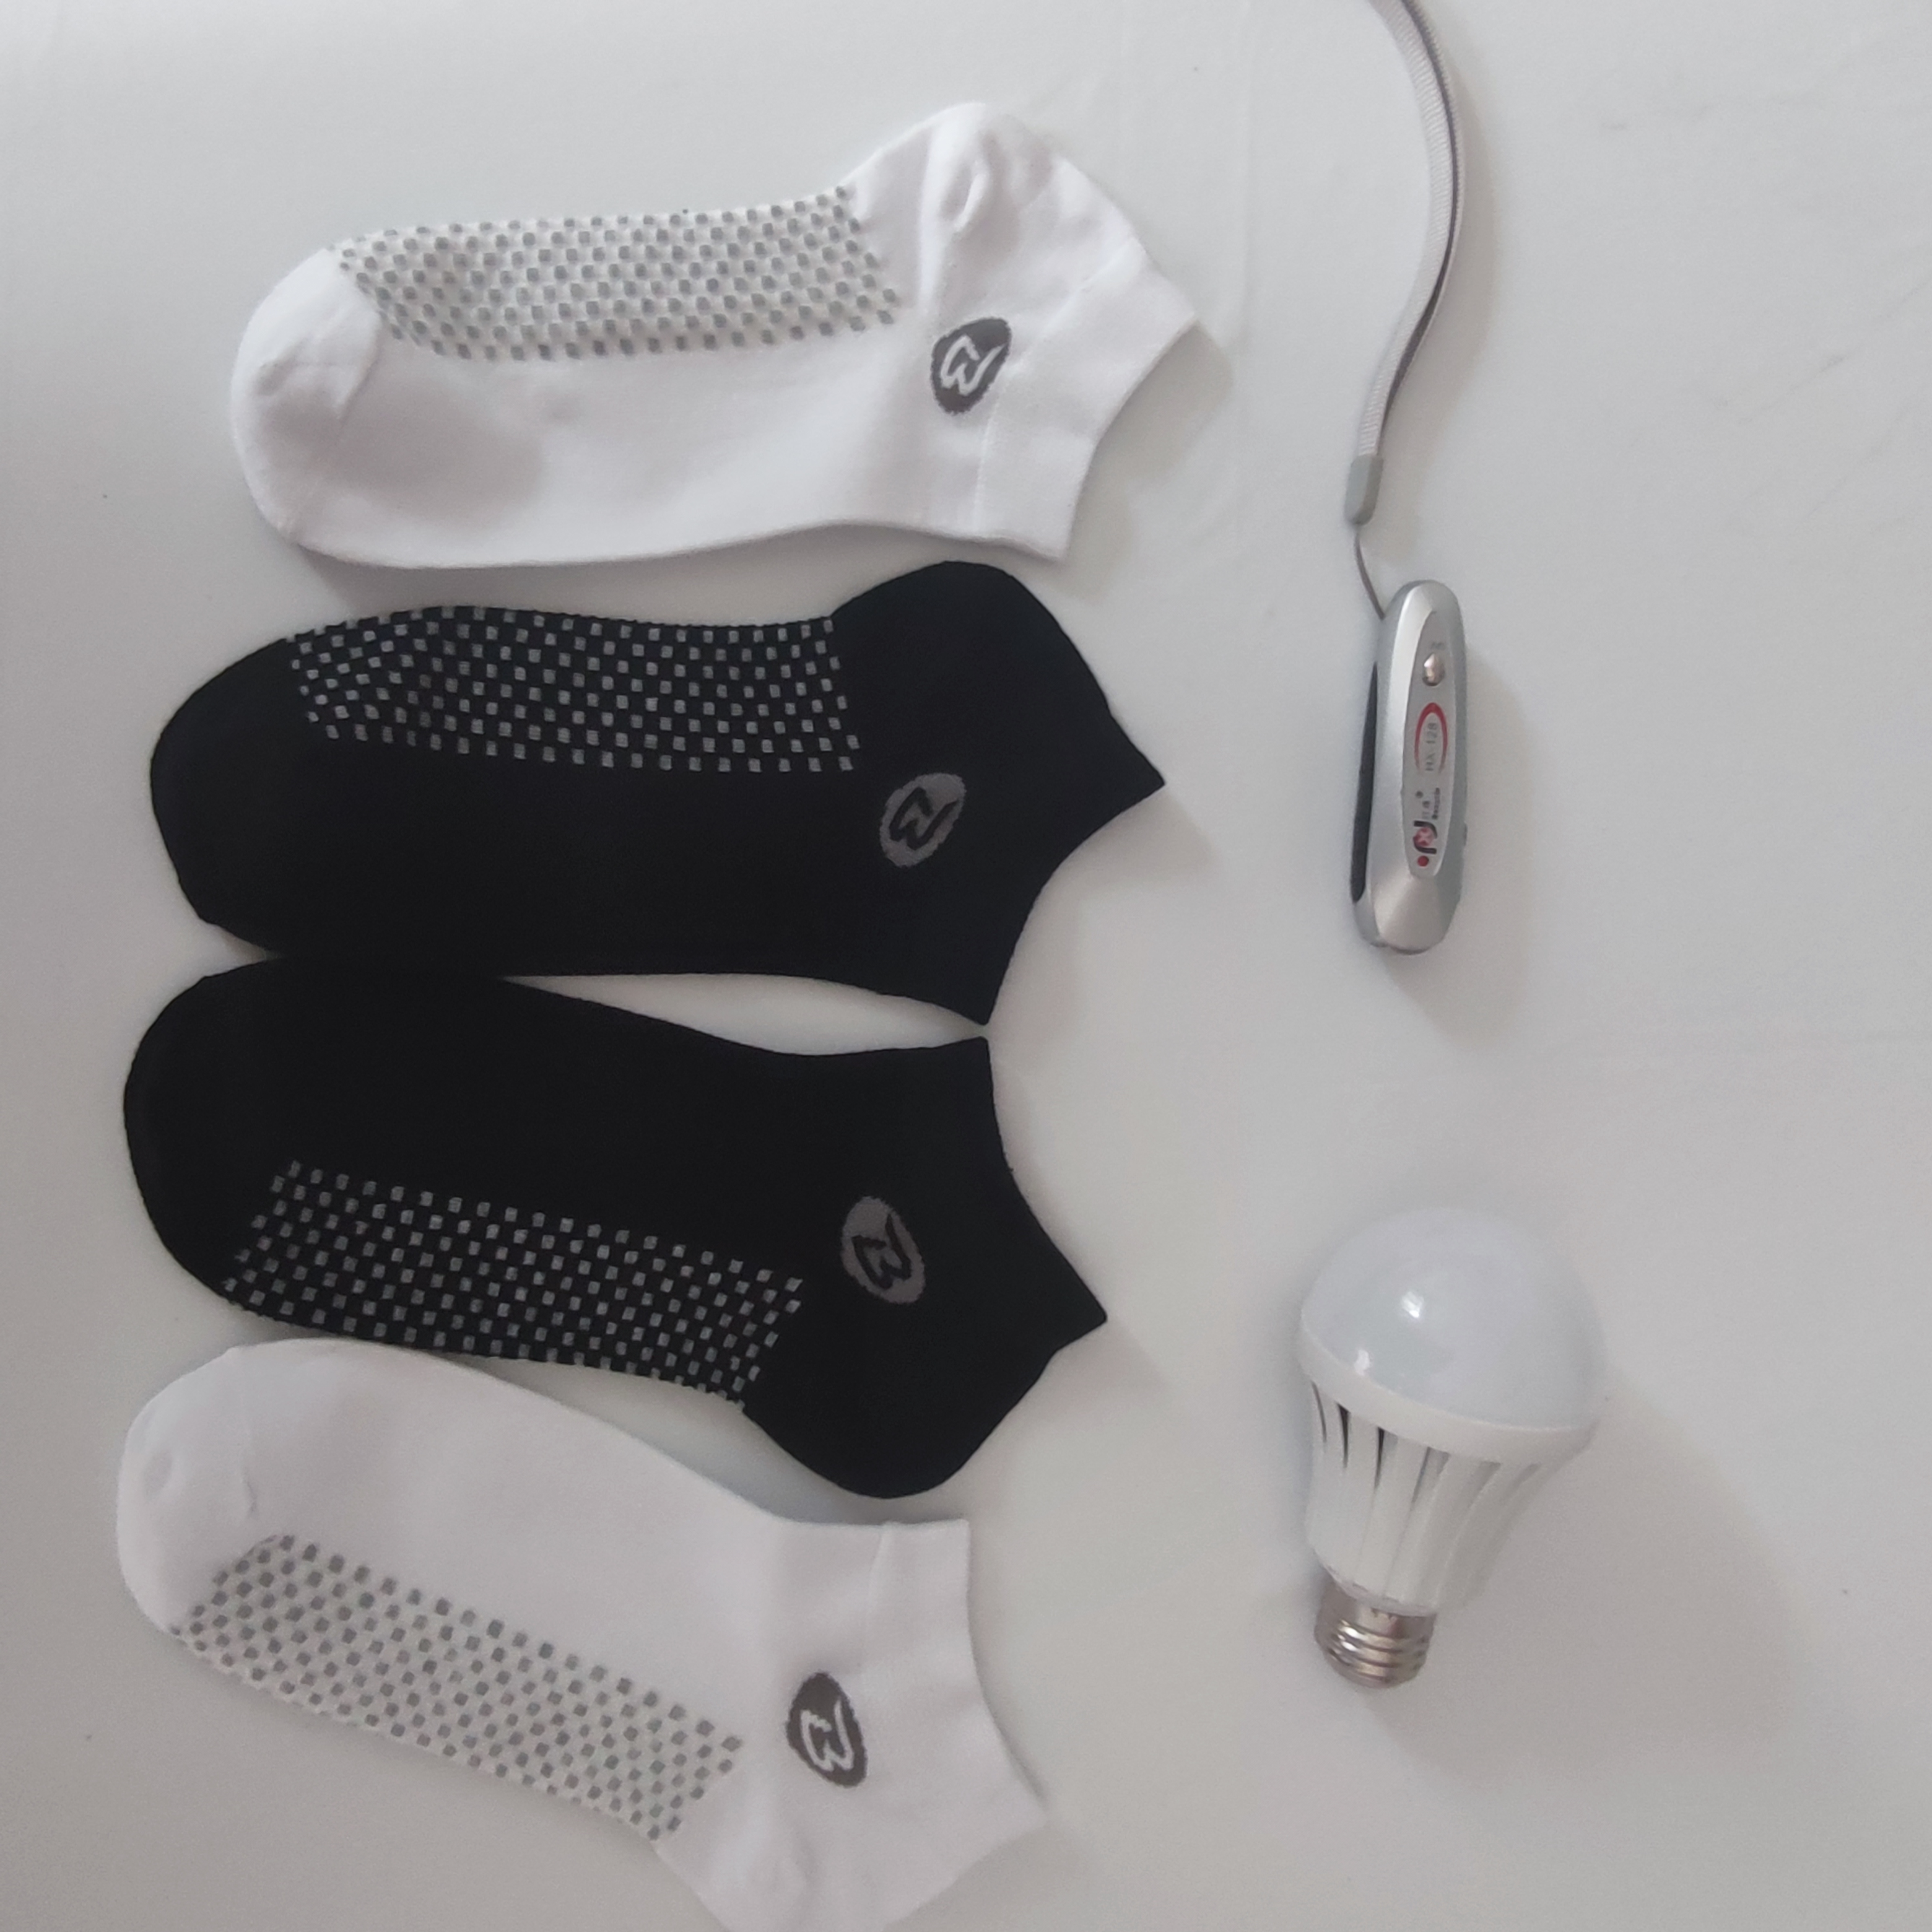 银纤维导电袜银纤维导电袜新款上市 可以亮灯的袜子 自发热袜子